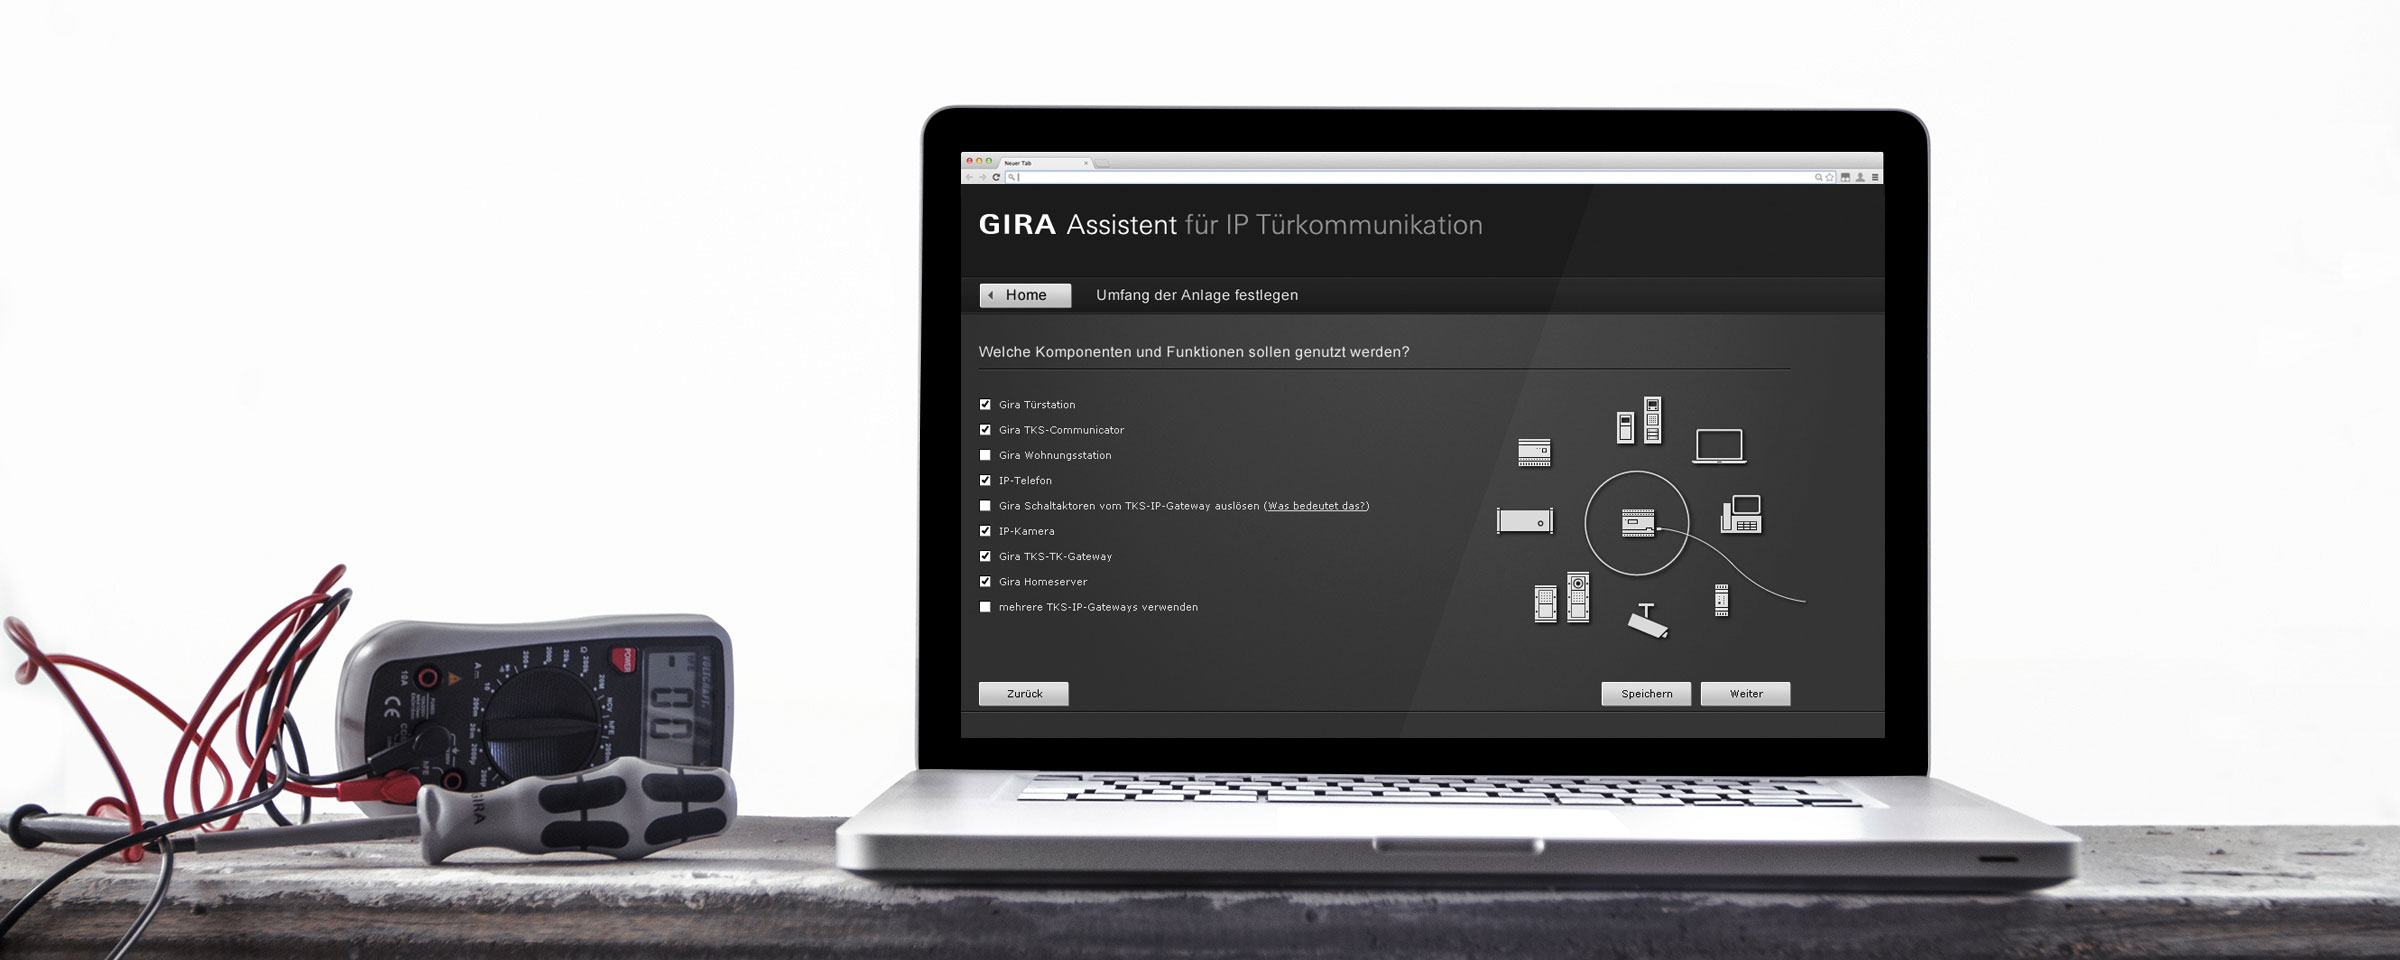 Laptop mit GIRA-Anwendung zur Bestimmung des Umfangs des Systems mit einem daneben platzierten Digital-Multimeter